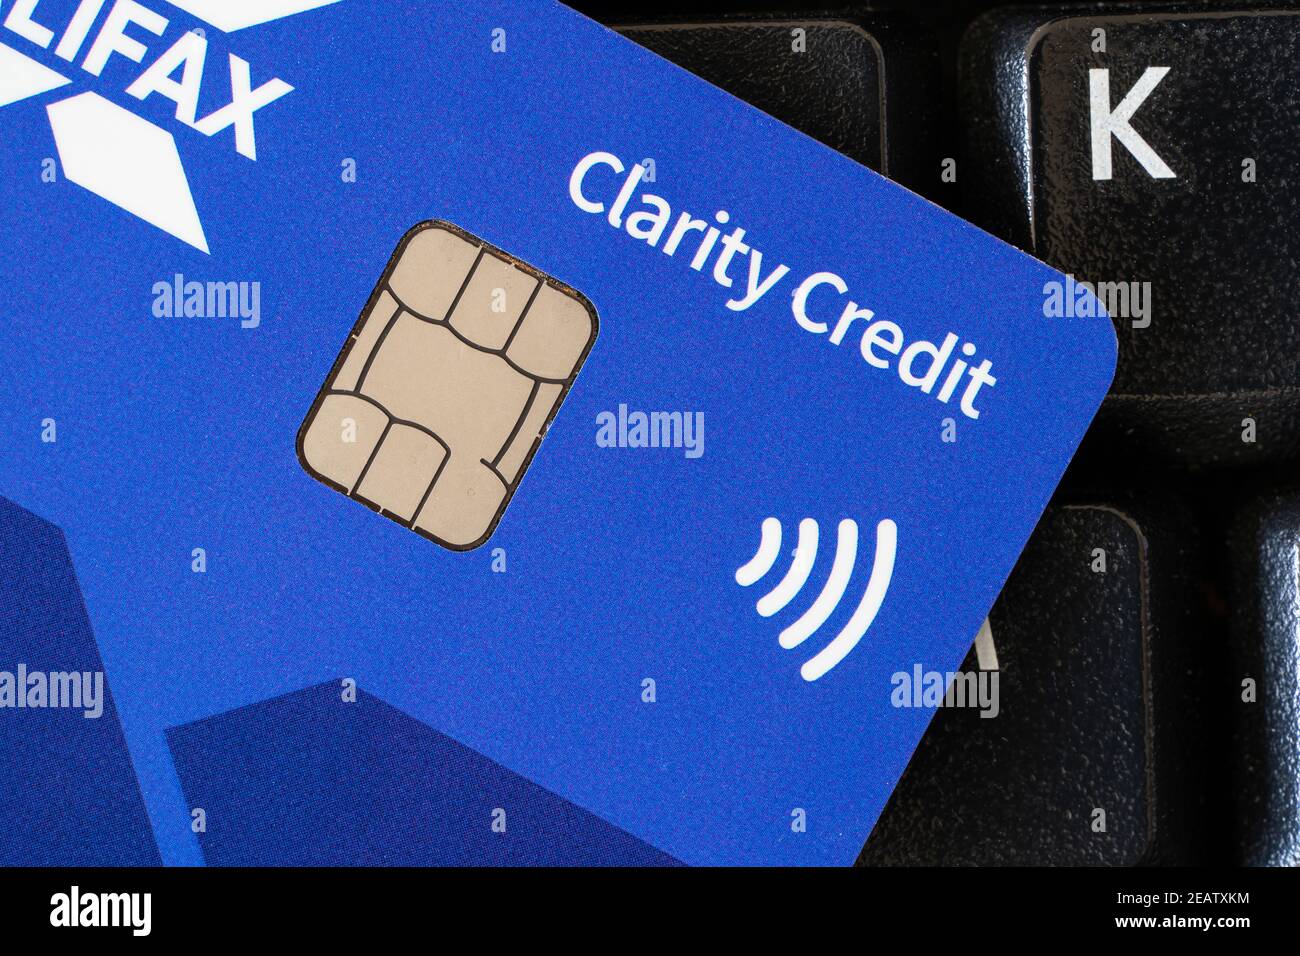 Gros plan sur une Halifax Clarity Card - carte de crédit britannique avec puce et logo pour le paiement sans contact. Thème : puce et code PIN, dette, paiement sans espèces Banque D'Images